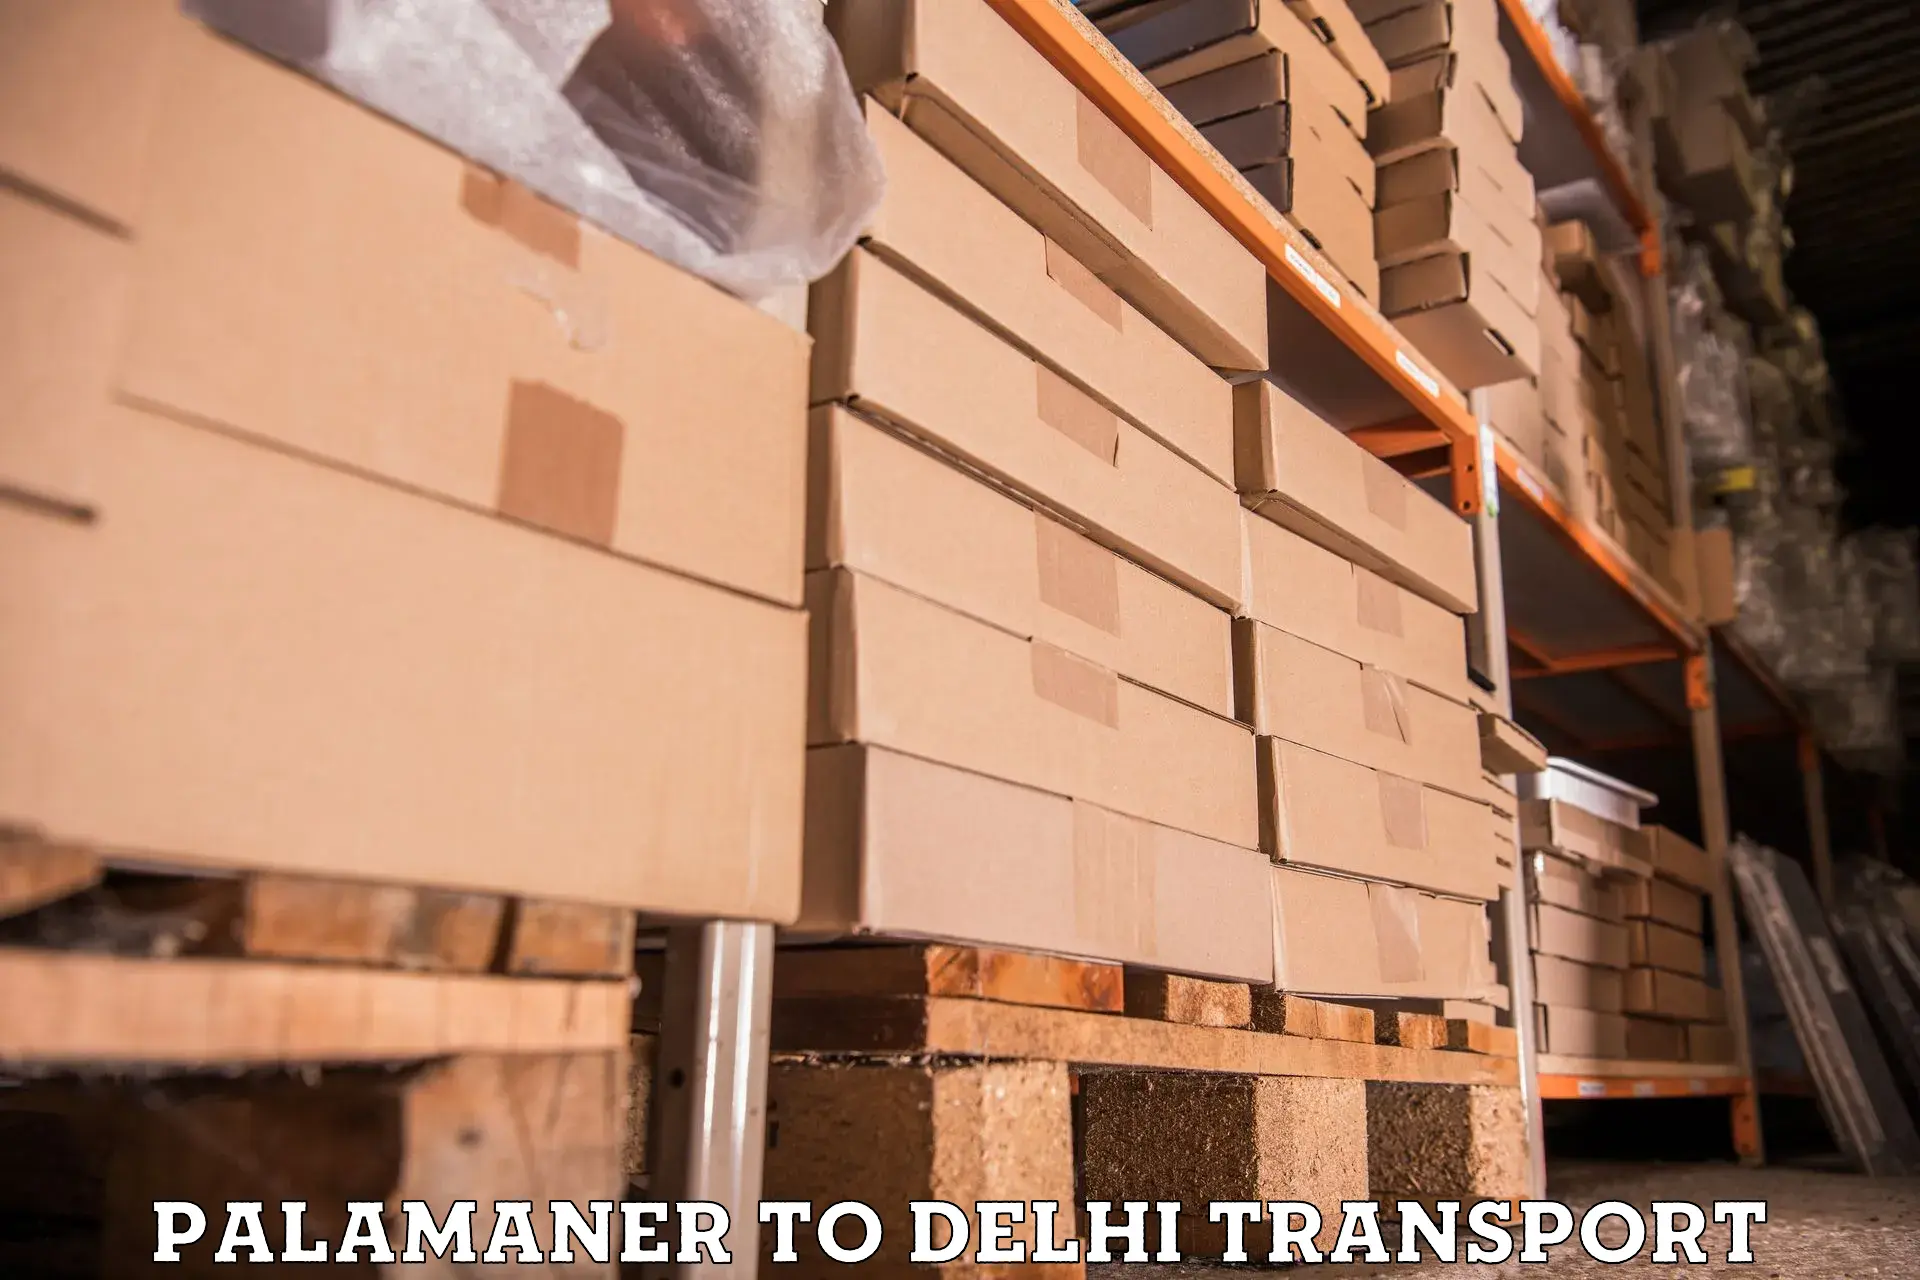 Furniture transport service Palamaner to East Delhi